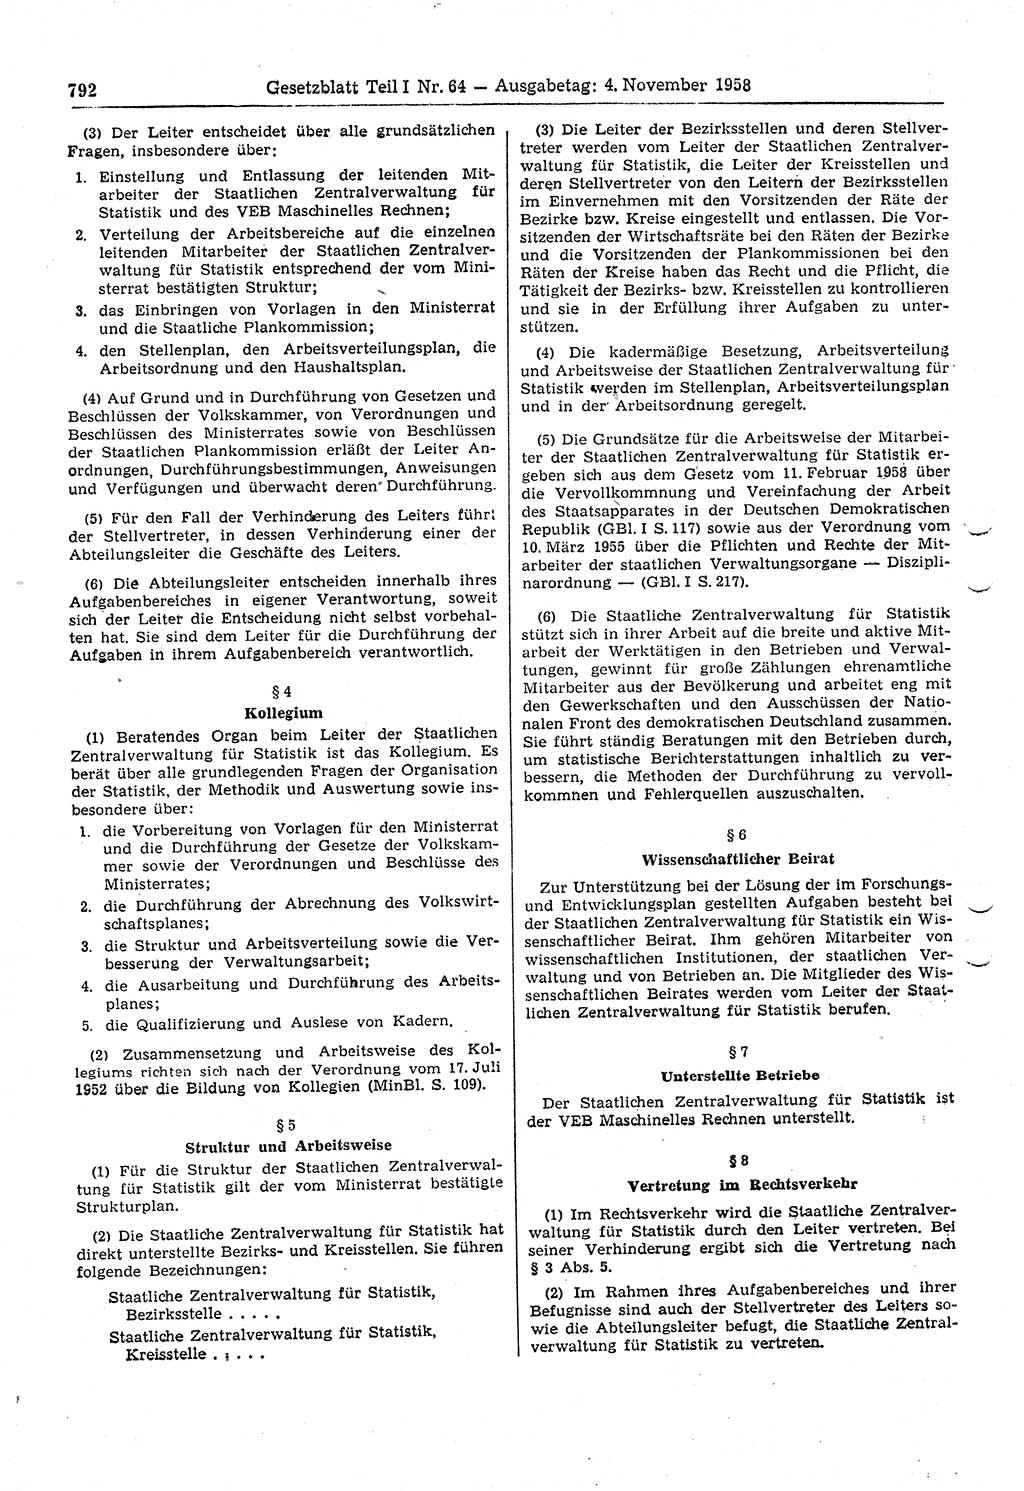 Gesetzblatt (GBl.) der Deutschen Demokratischen Republik (DDR) Teil Ⅰ 1958, Seite 792 (GBl. DDR Ⅰ 1958, S. 792)